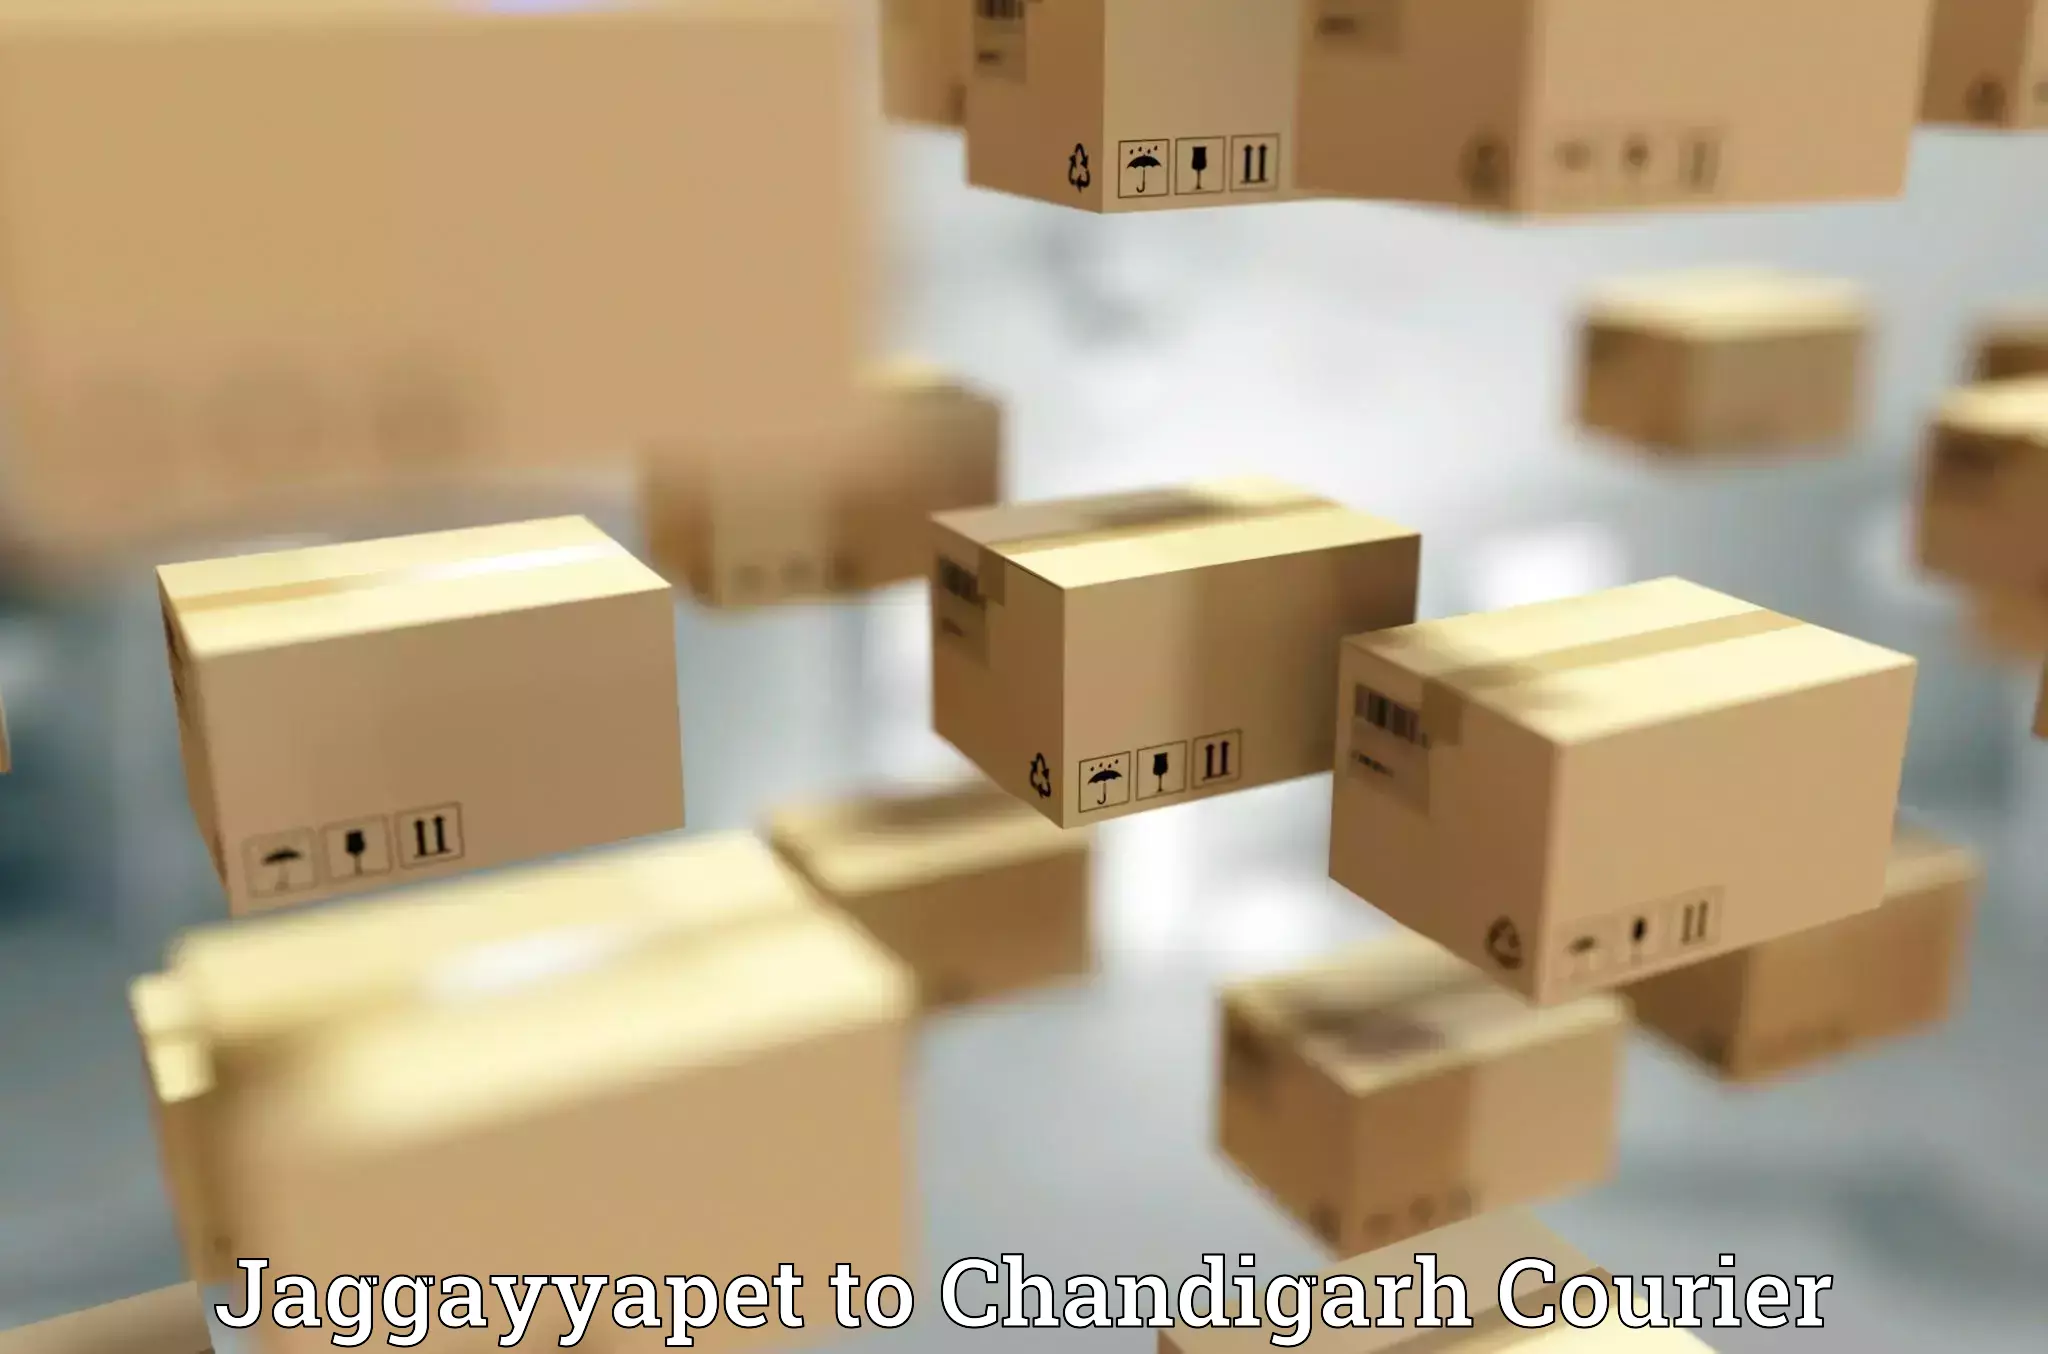 Urban courier service Jaggayyapet to Chandigarh